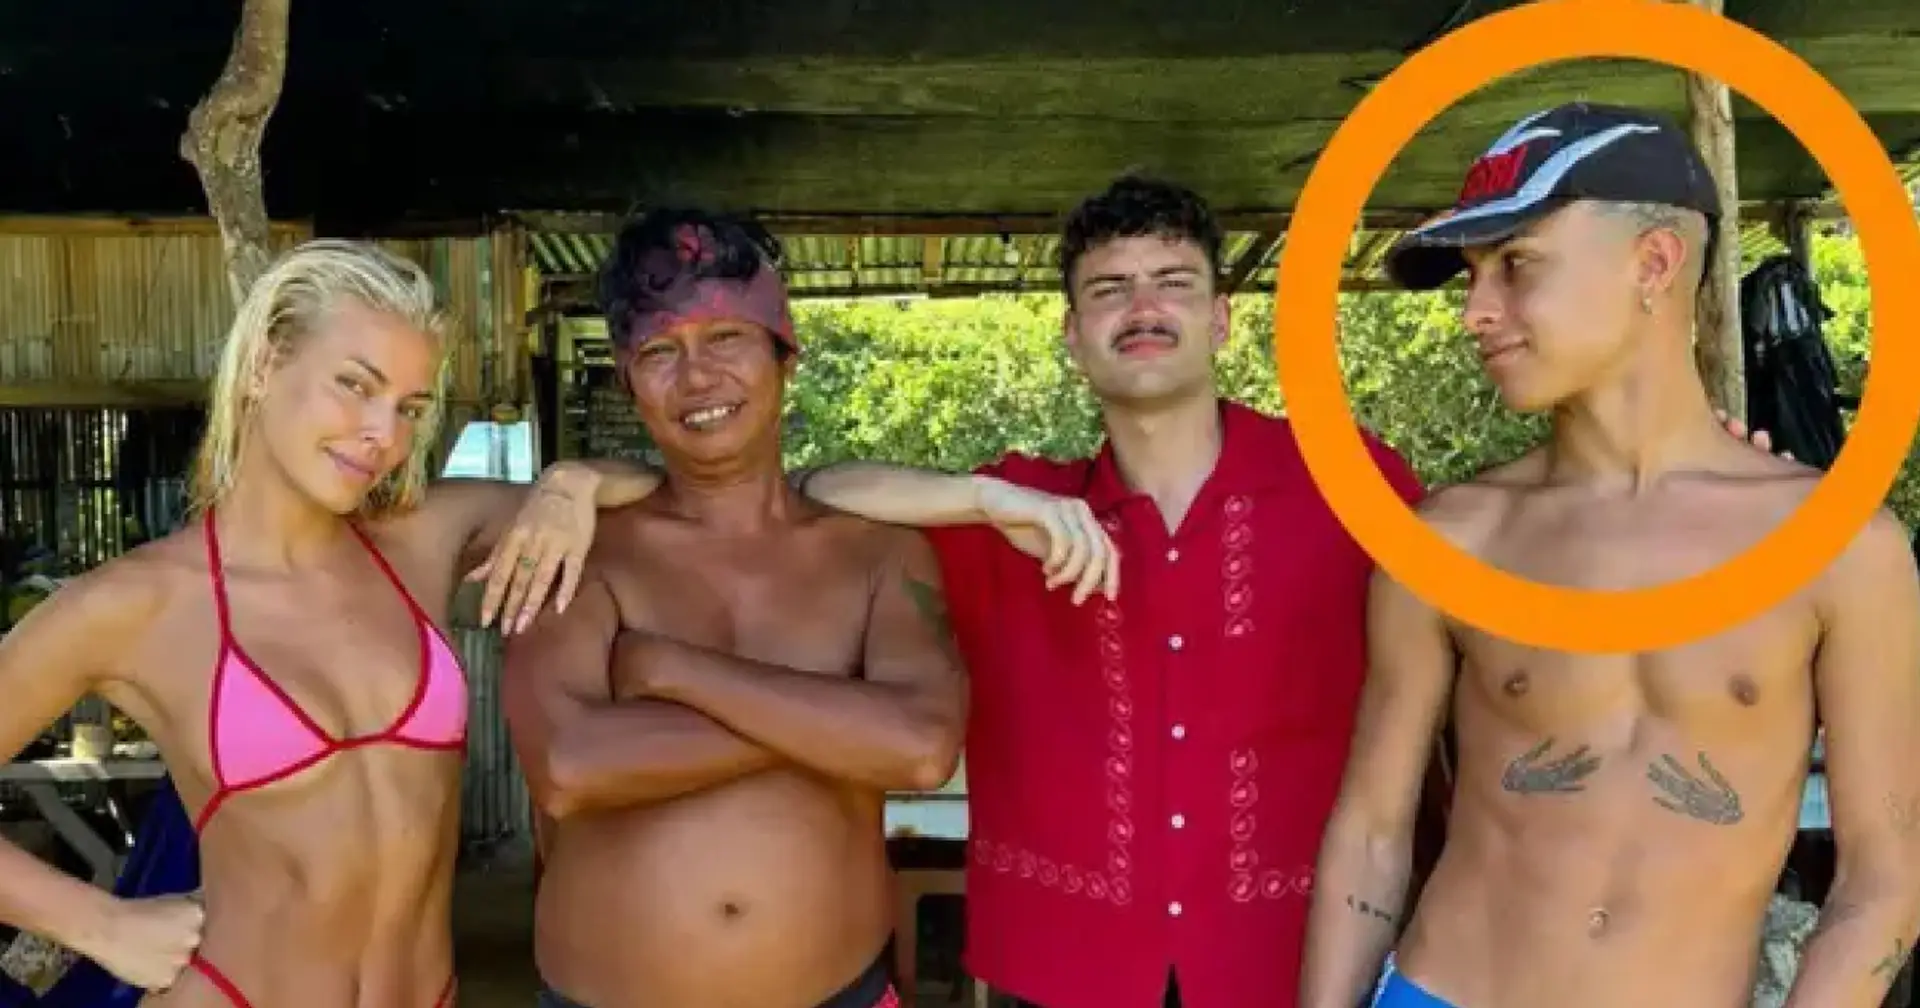 Wer ist das? Mysteriöser Mann neben Bartras Freundin auf pikanten Bali-Fotos gesichtet 